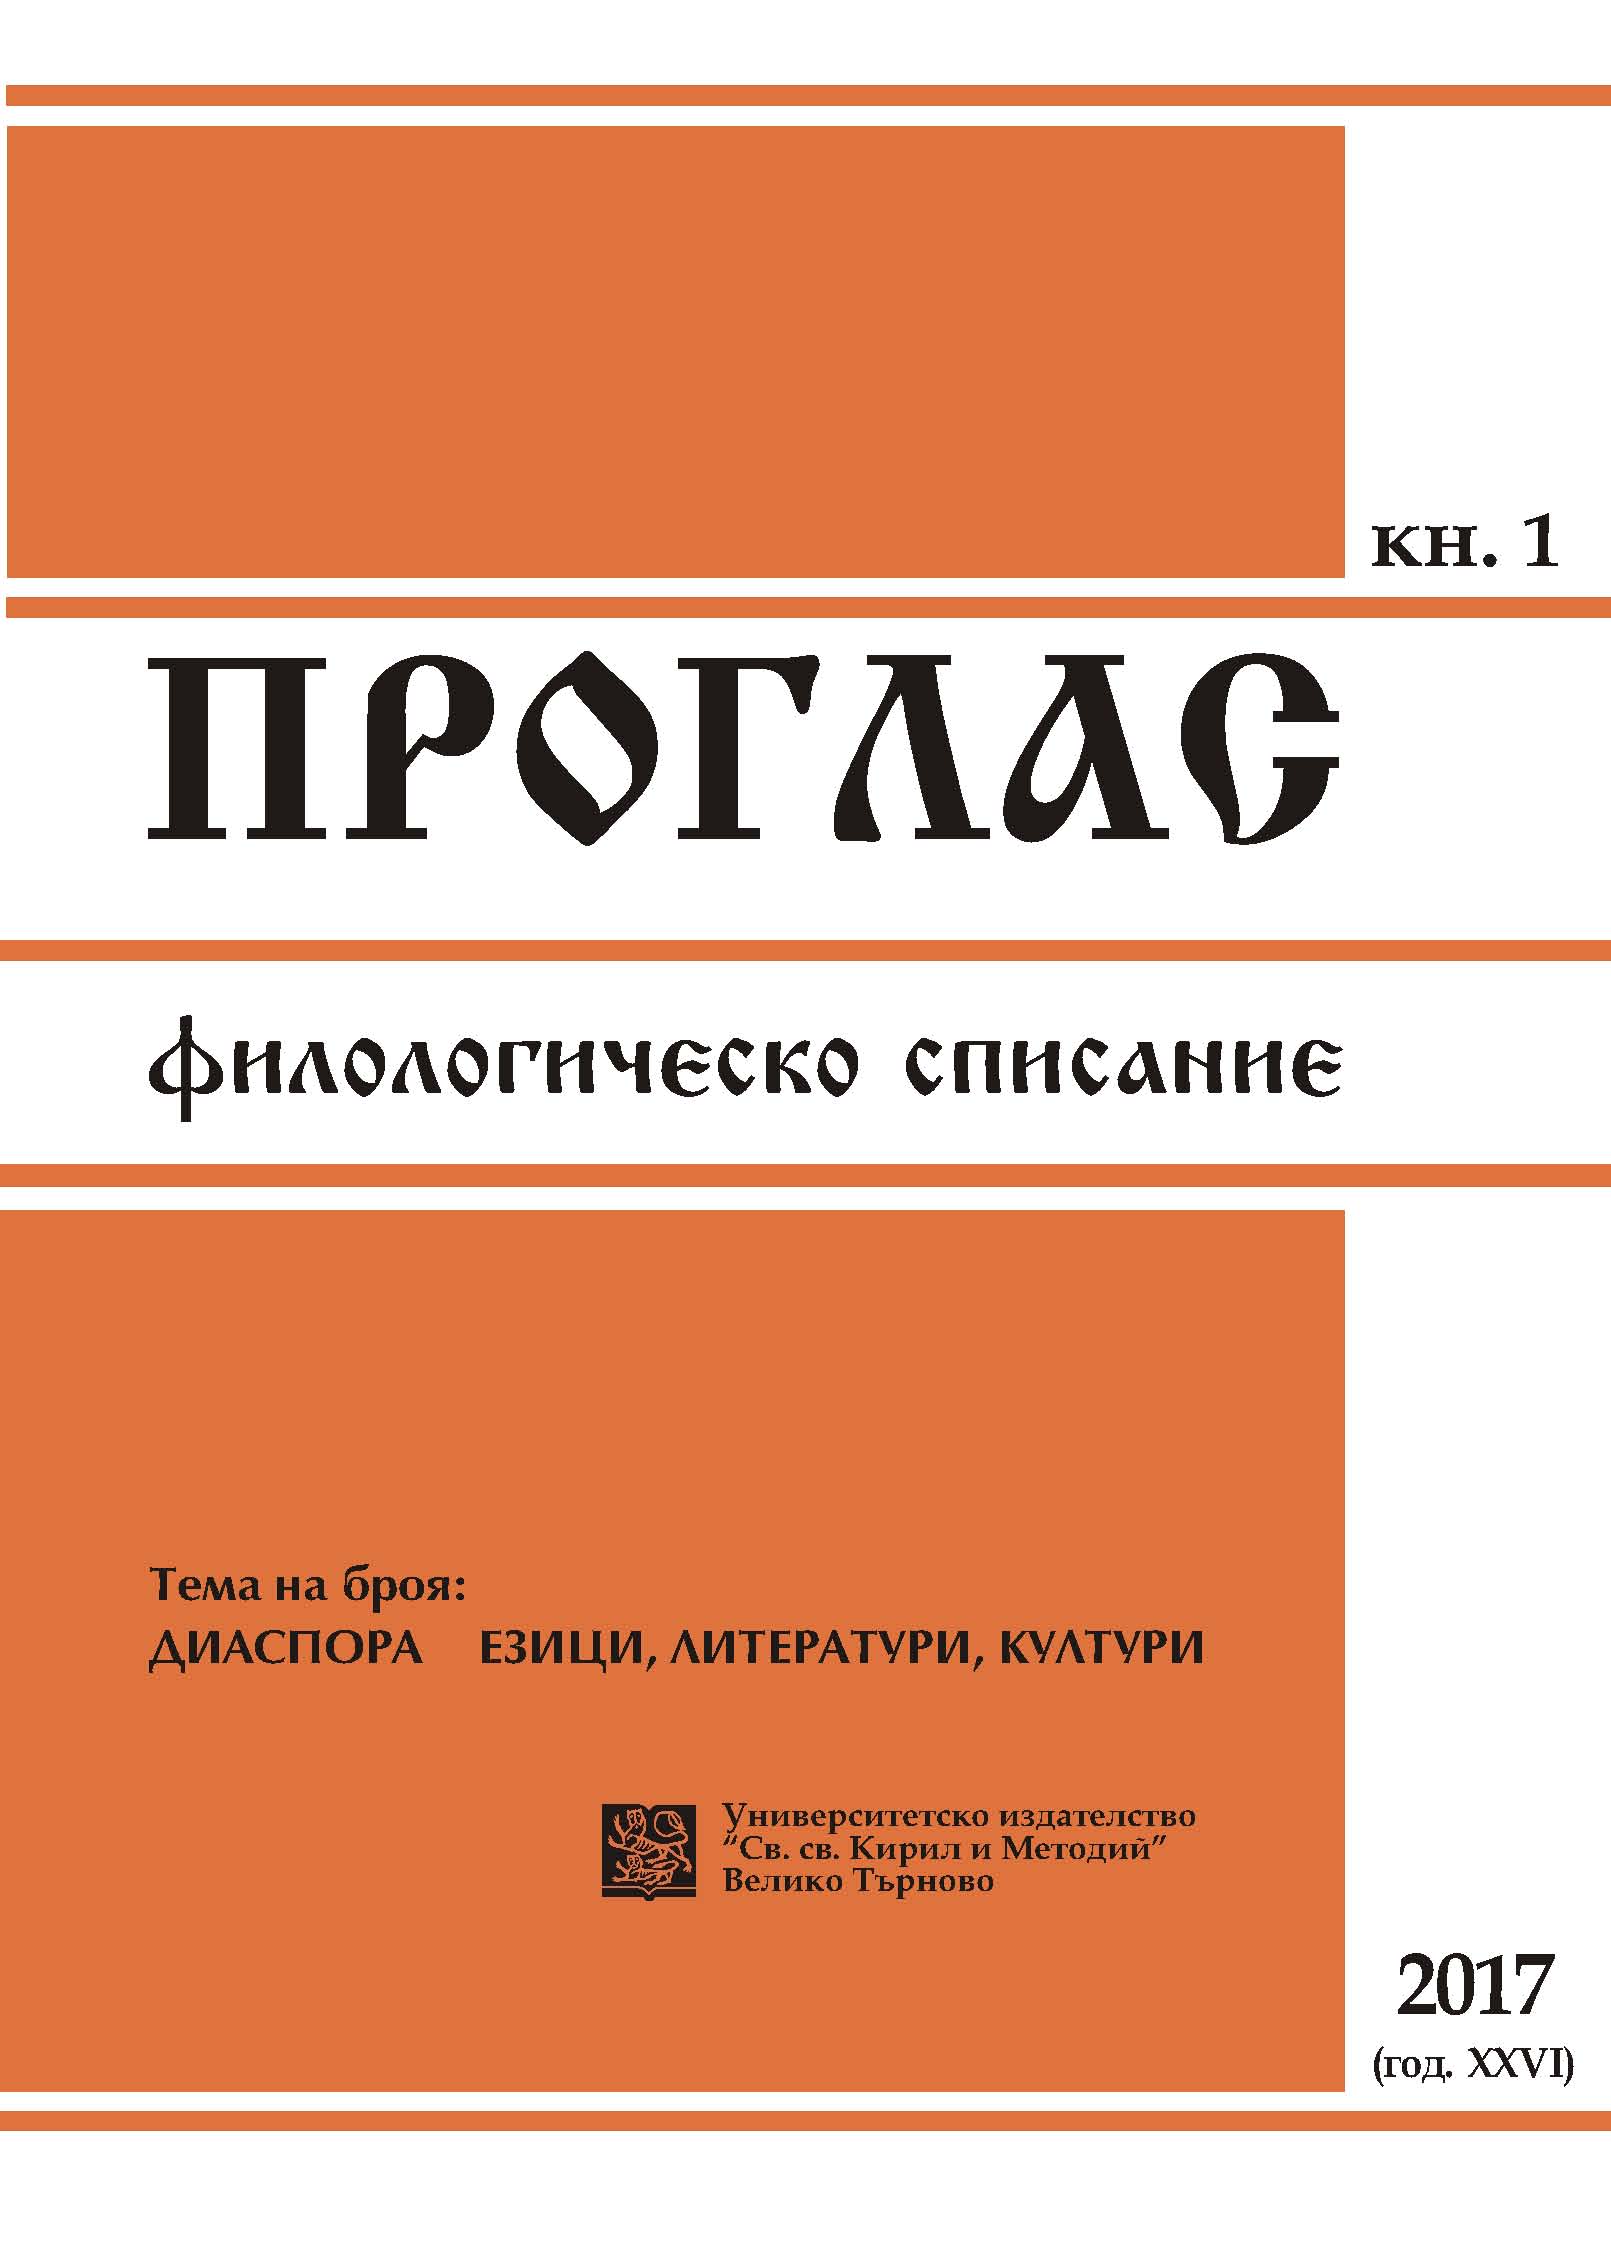 Народният календар на бесарабския българин: езиково-културно интерпретиране. Речник